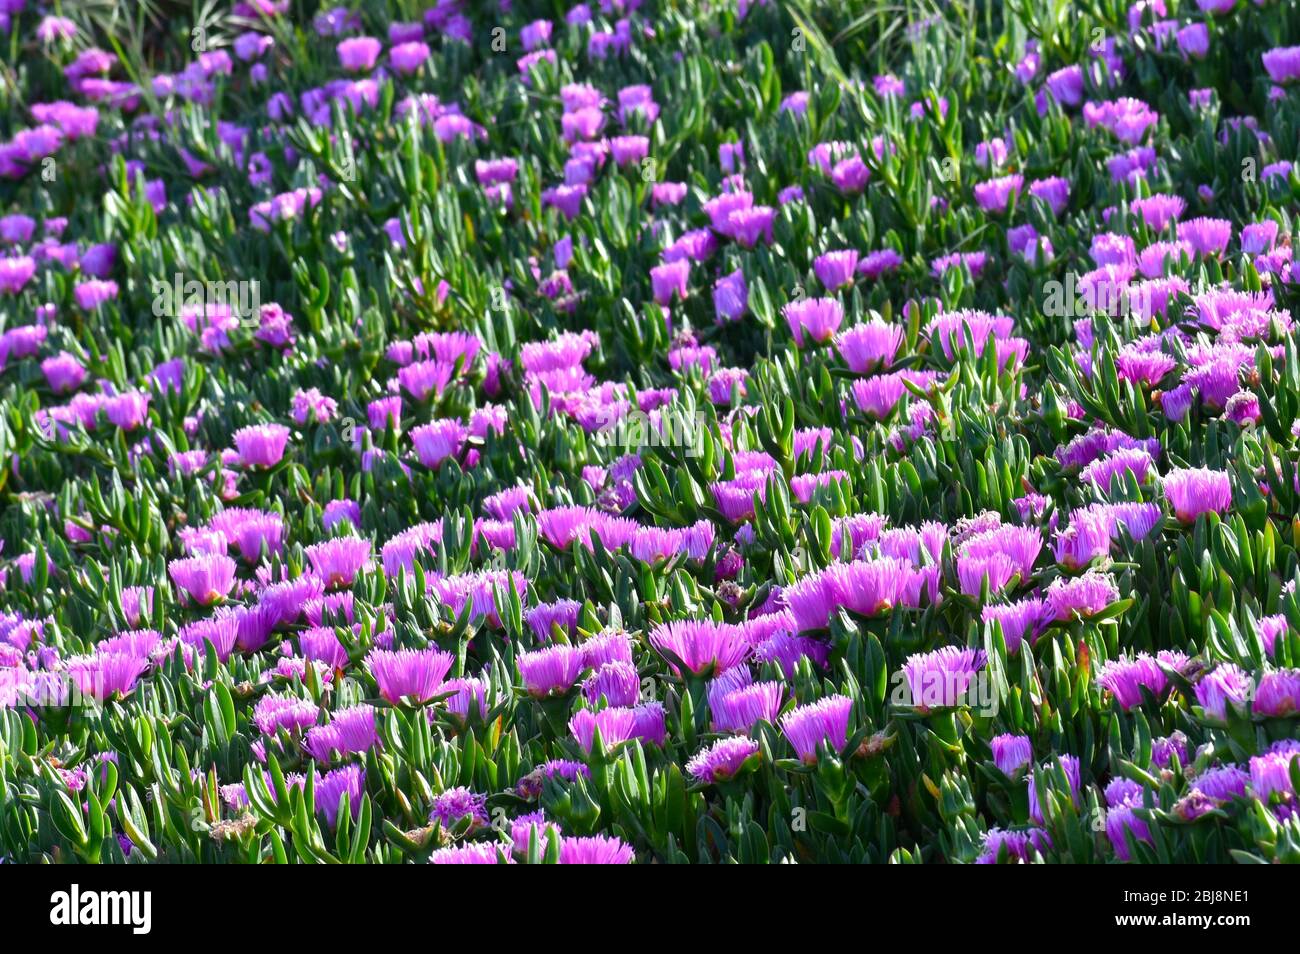 Une grande plante de glace à fleurs violettes (espèce Carpobrotus), une plante envahissante introduite qui pousse près de Struve Slough en Californie Banque D'Images